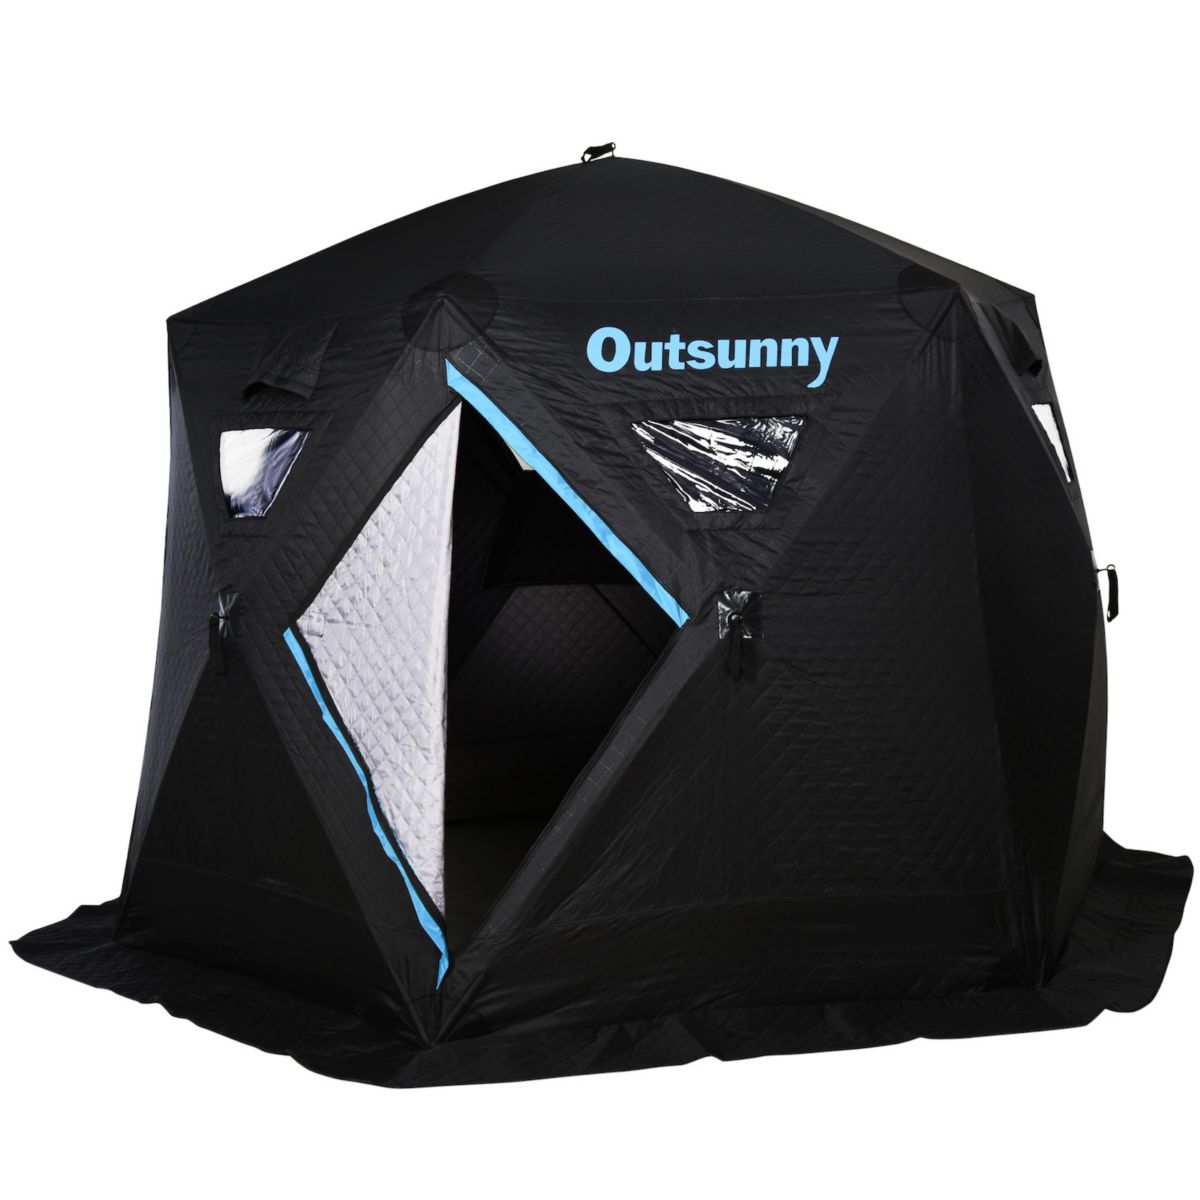 Outsunny Portable 4 6 человек всплывающая палатка для подледной рыбалки для 104 градусов по Фаренгейту с сумкой для переноски и тканью Оксфорд Build 116,25 # 34; Outsunny